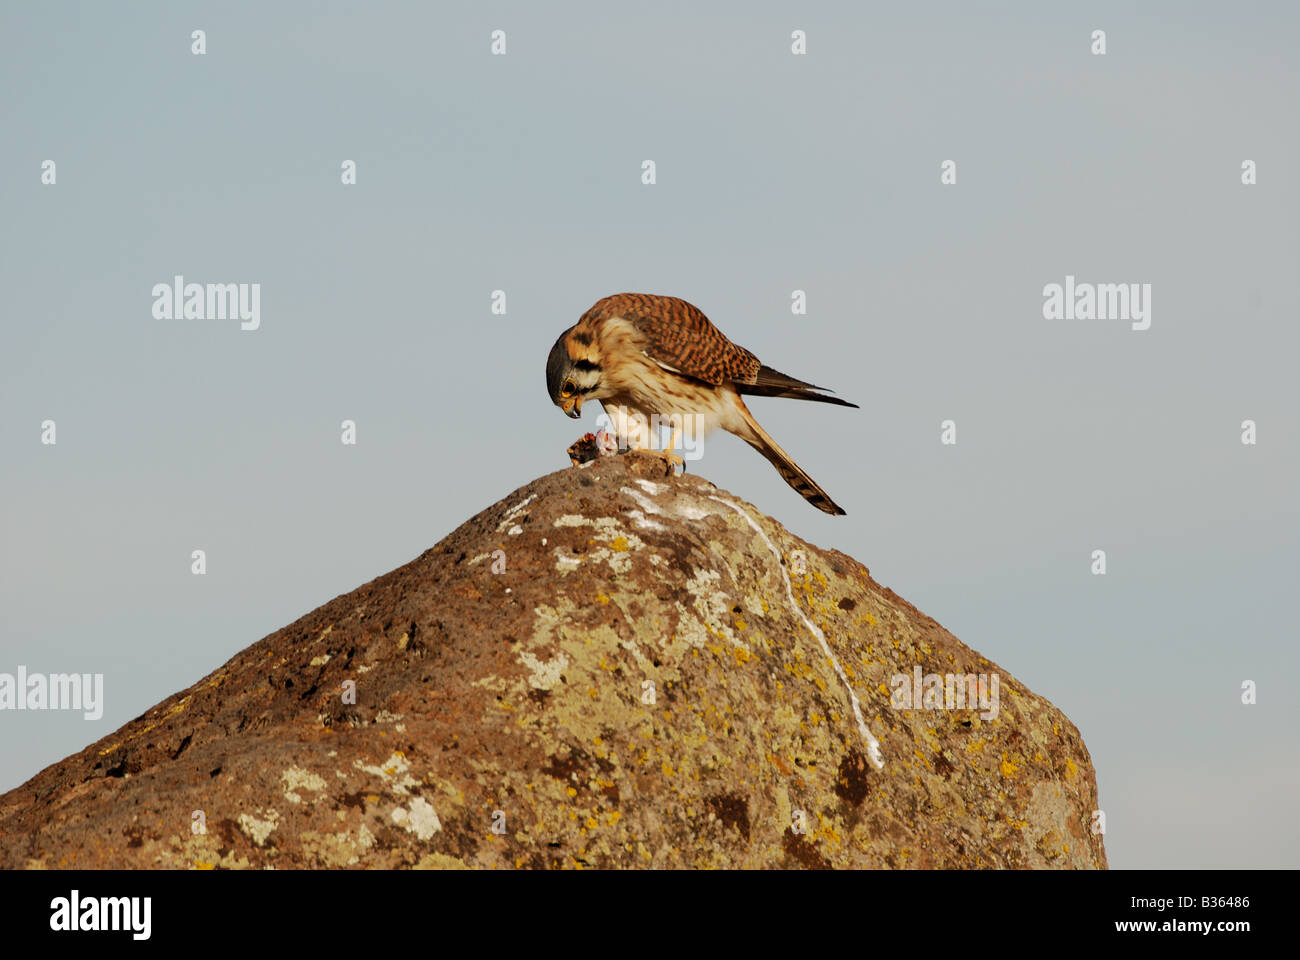 Peru, bird eating at ancient ruins at Sillustani Stock Photo